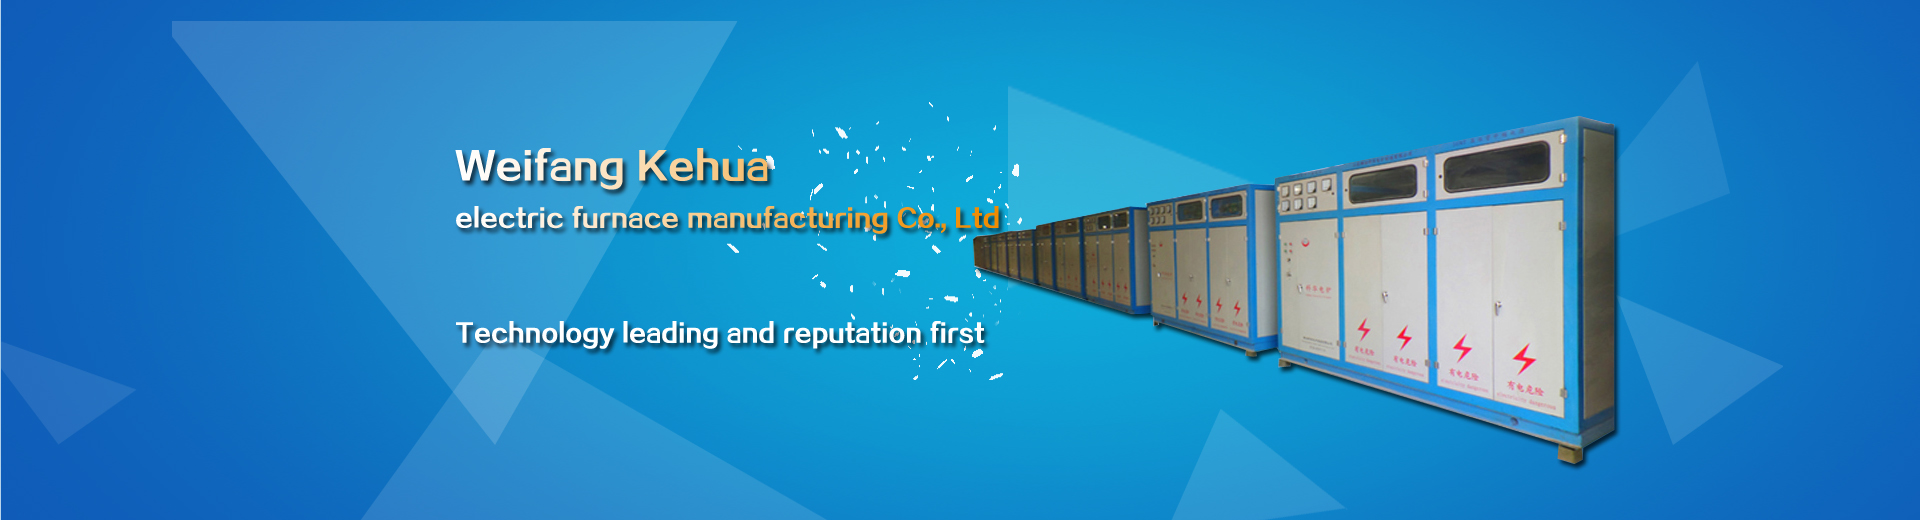 Weifang Kehua electric furnace manufacturing